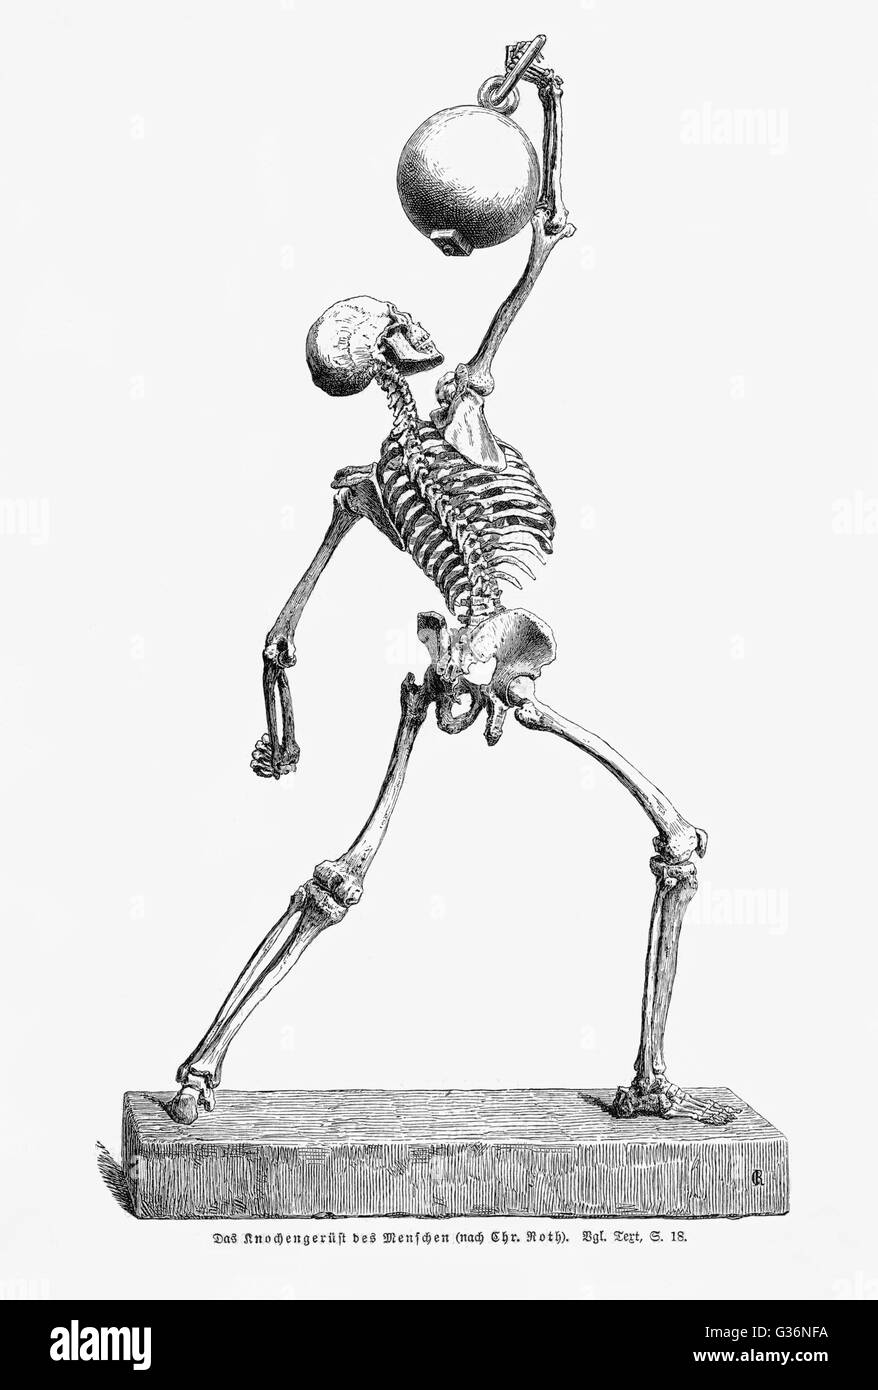 Un squelette humain en mouvement, tenant un objet lourd au-dessus de sa tête. Date : fin du 19e siècle Banque D'Images